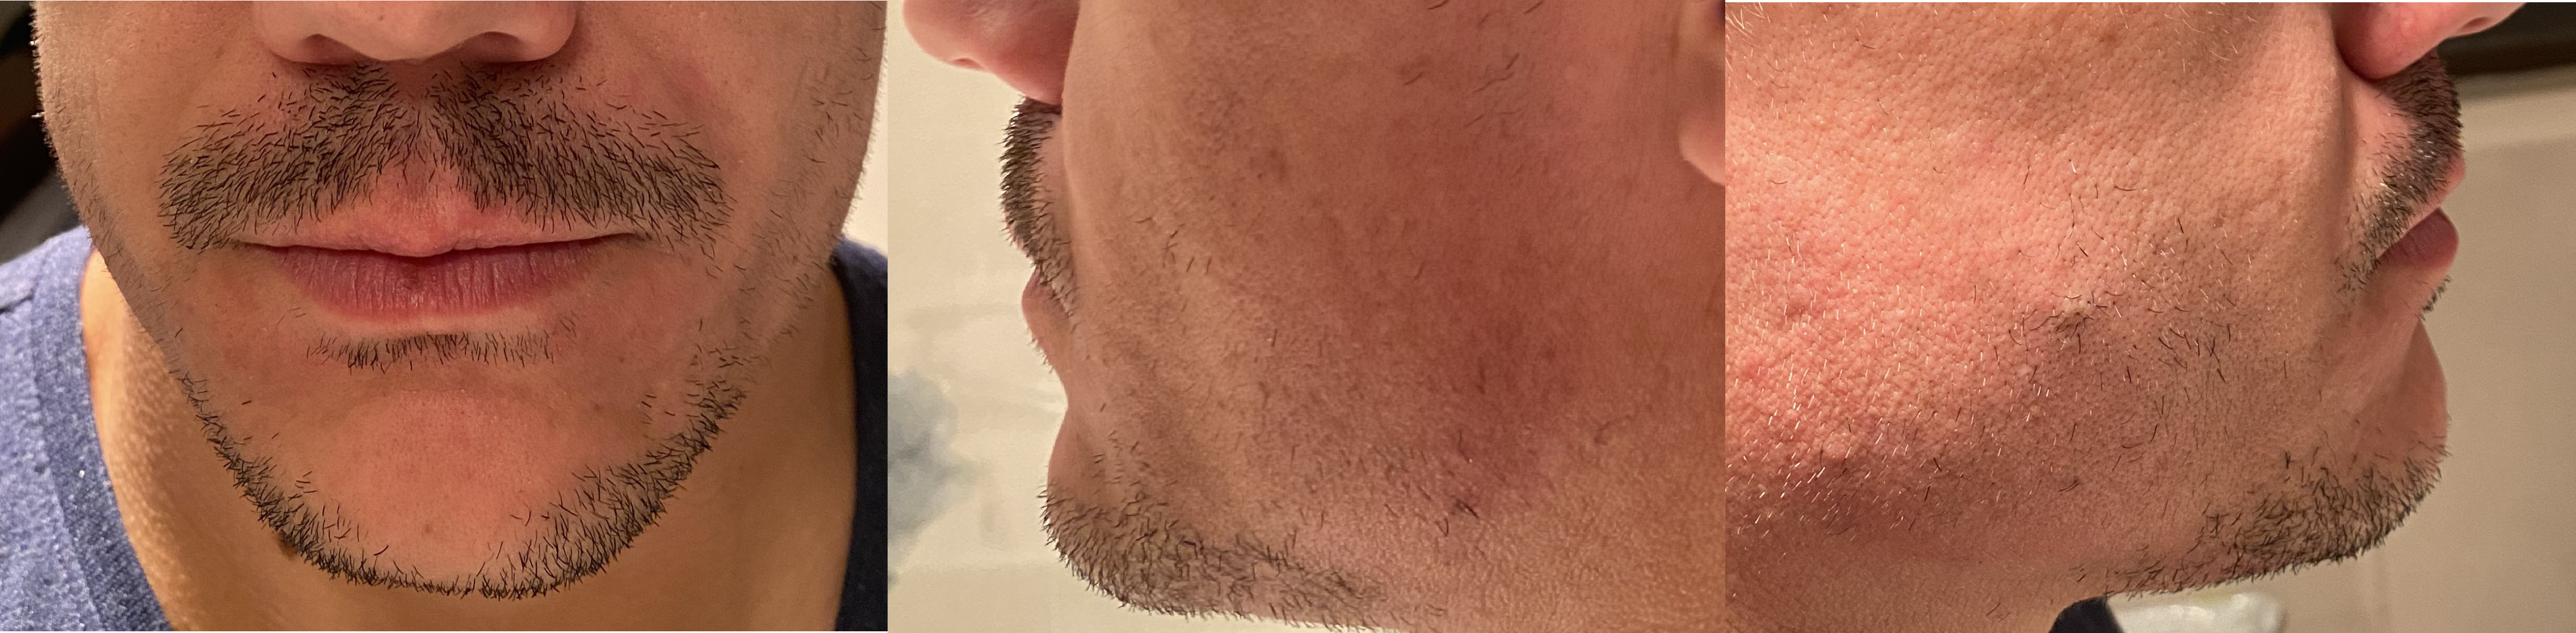 blog/growing-a-beard/2020-07-19.jpg